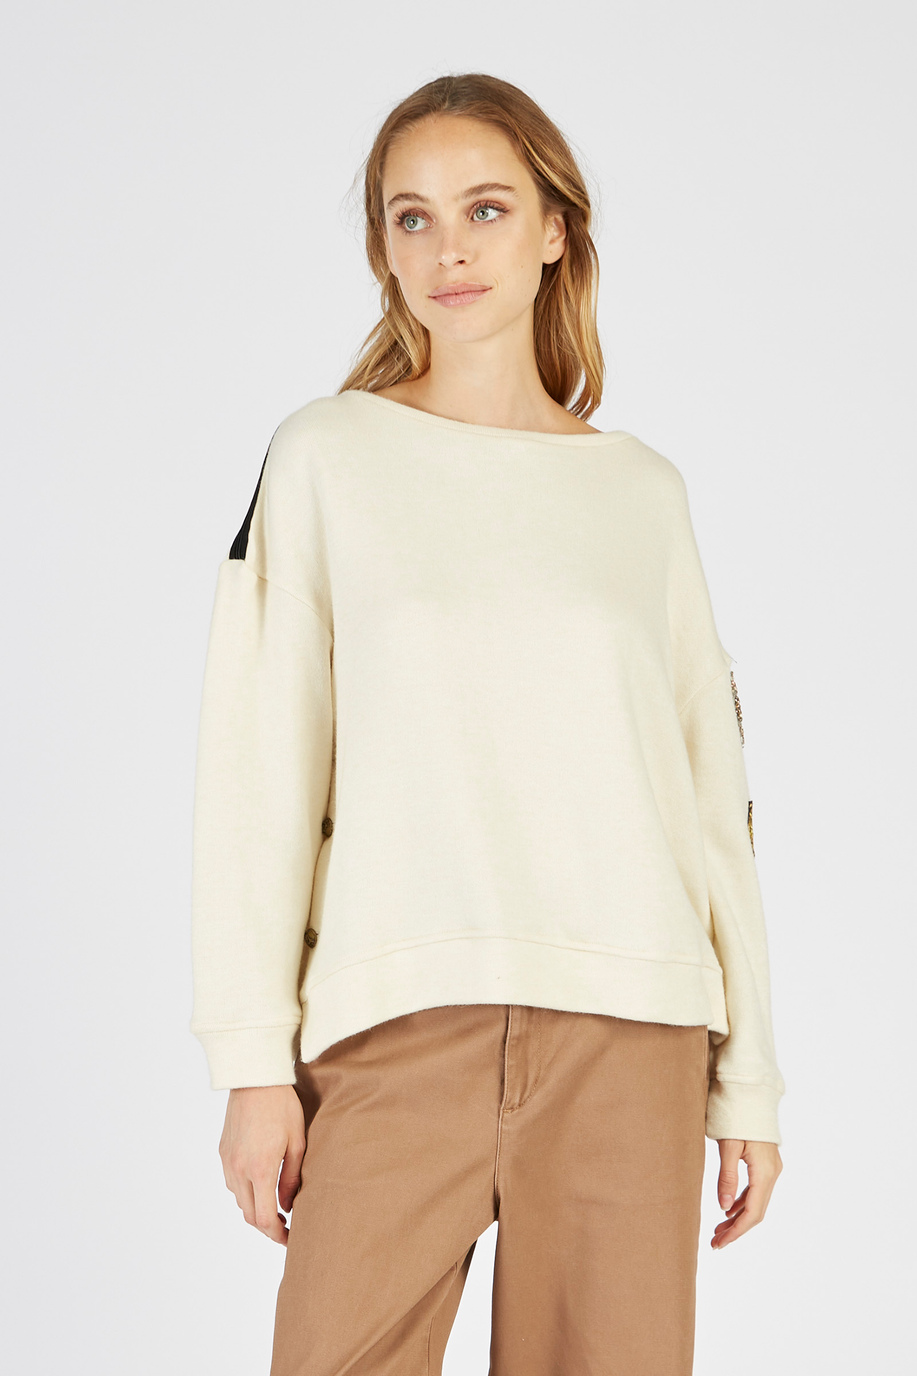 Damen-Sweatshirt mit hohem Kragen und langen Ärmeln - Sweatshirts | La Martina - Official Online Shop